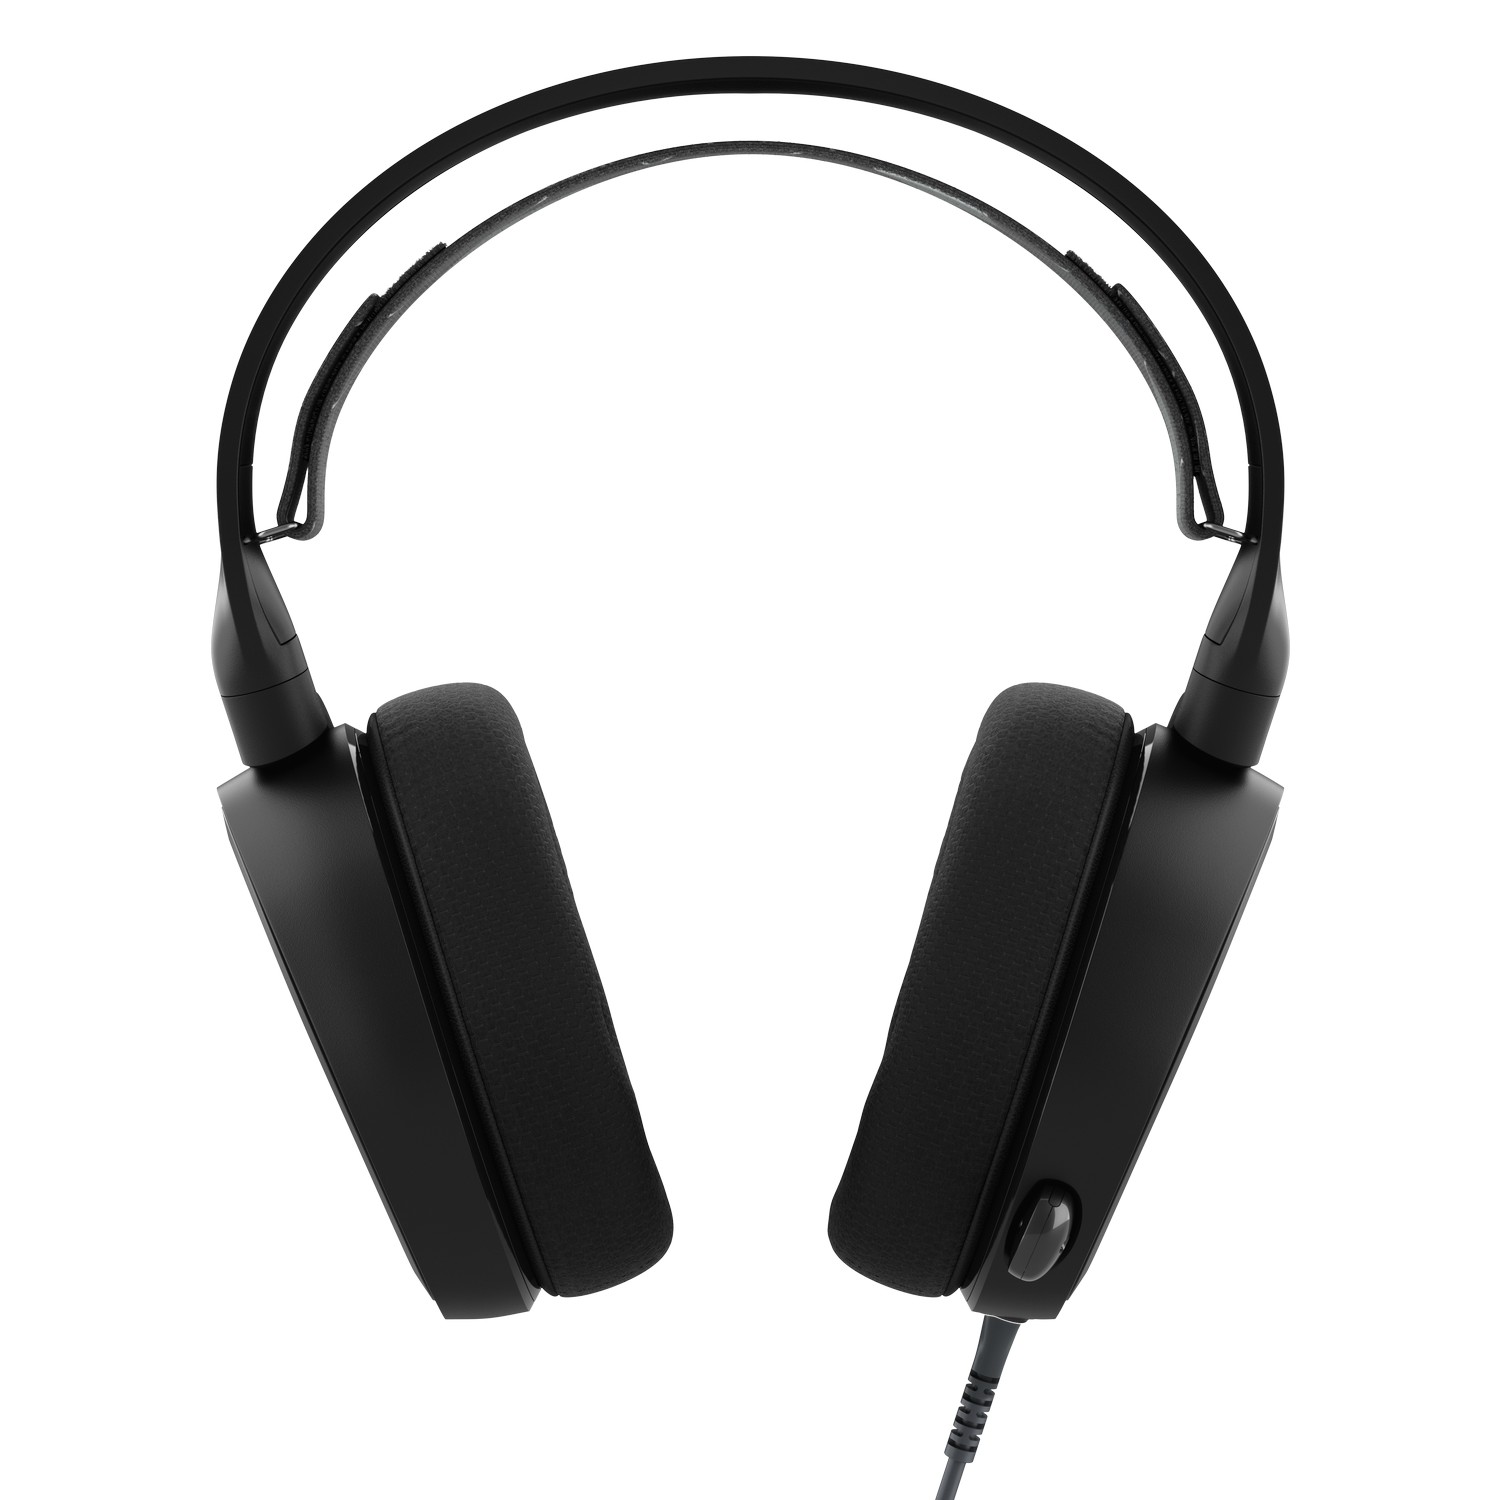 SteelSeries - SteelSeries Arctis 3 7.1 Surround Gaming Headset - Black (61503) 2019 Editi